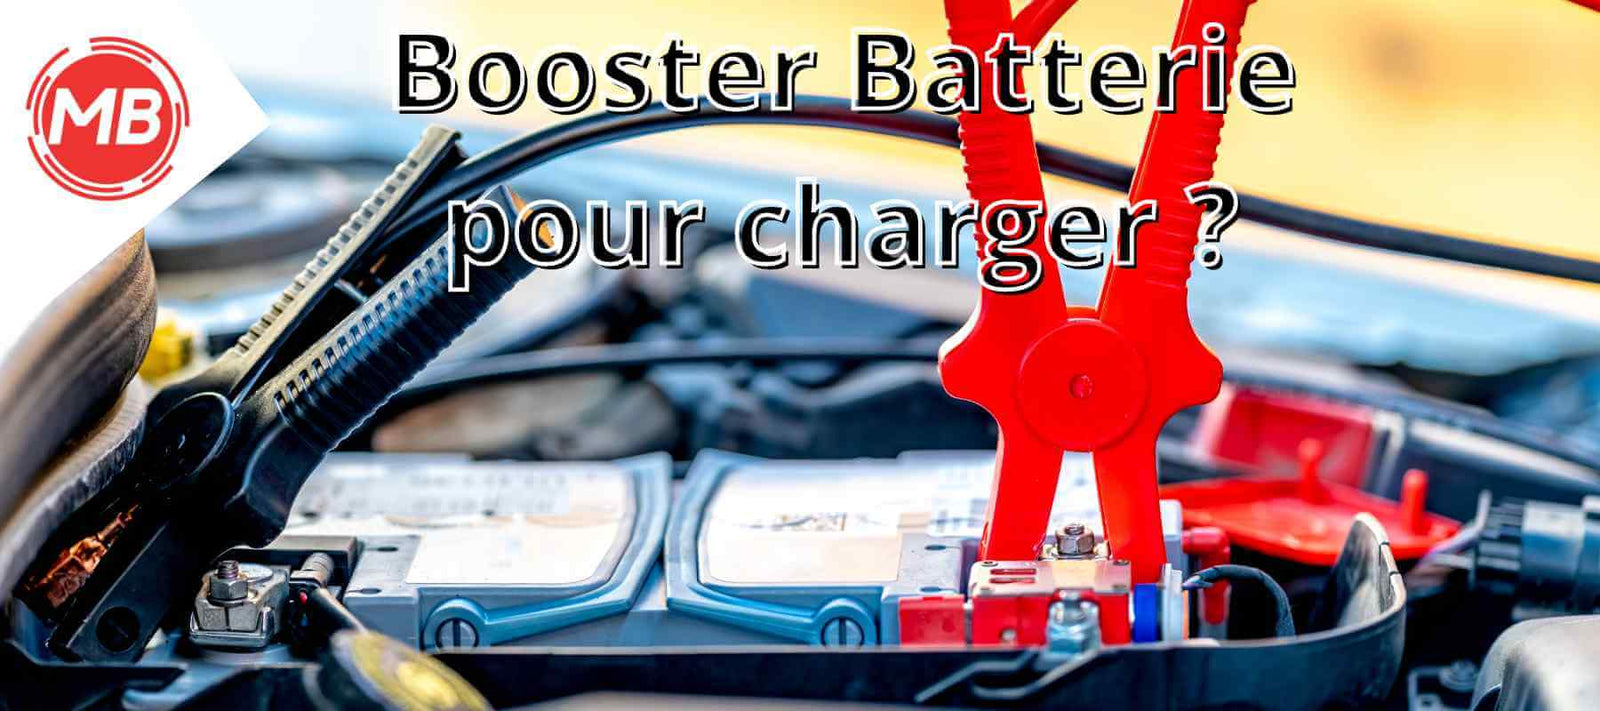 Comment recharger un booster de batterie ? - Magic-Booster